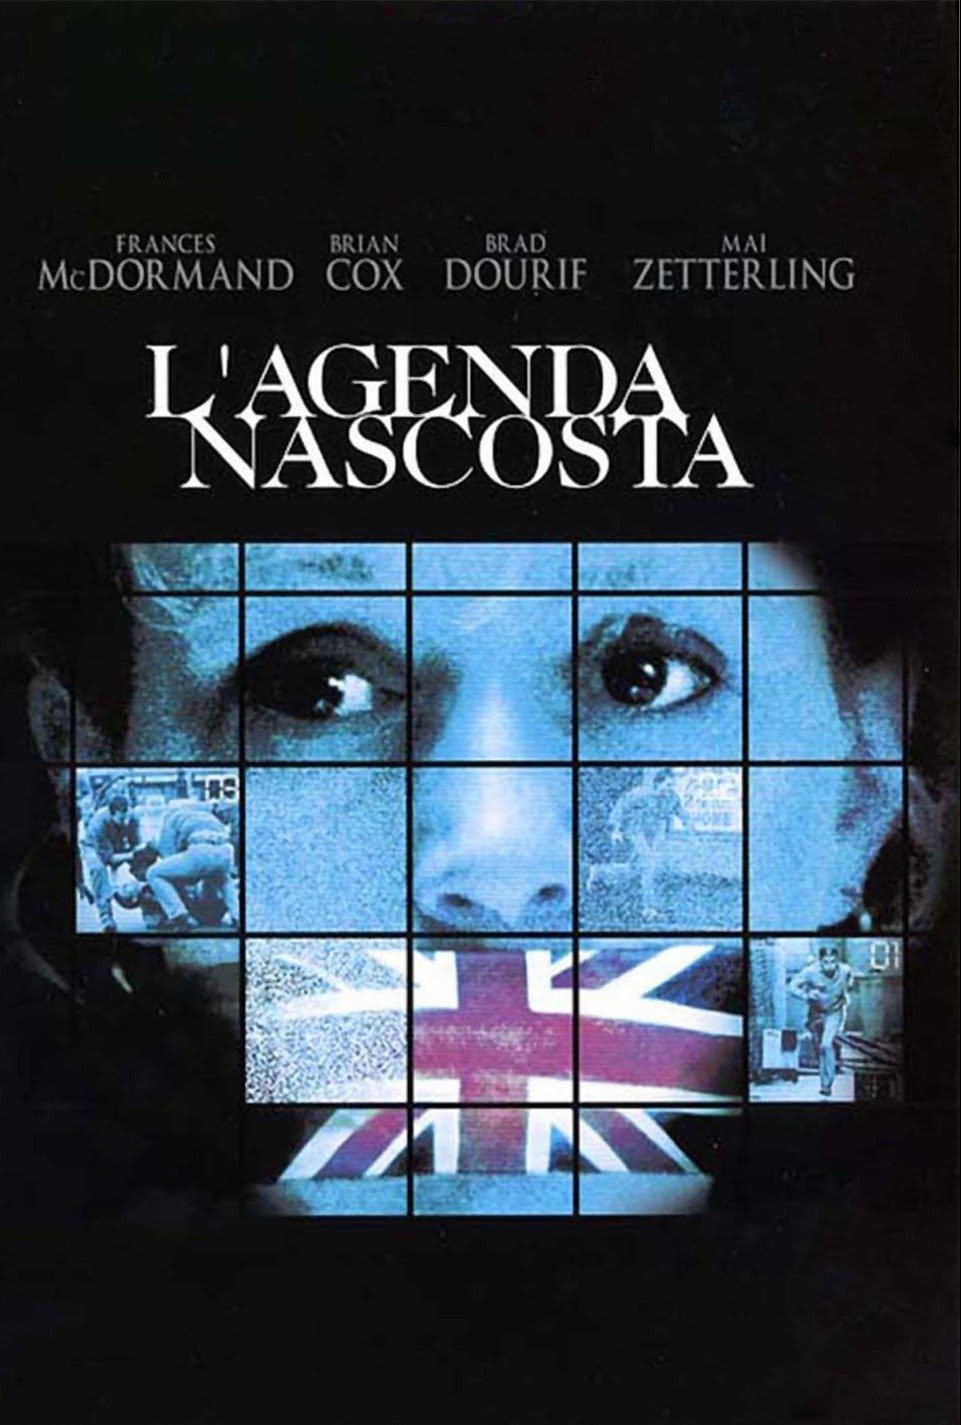 L’agenda nascosta (1990)